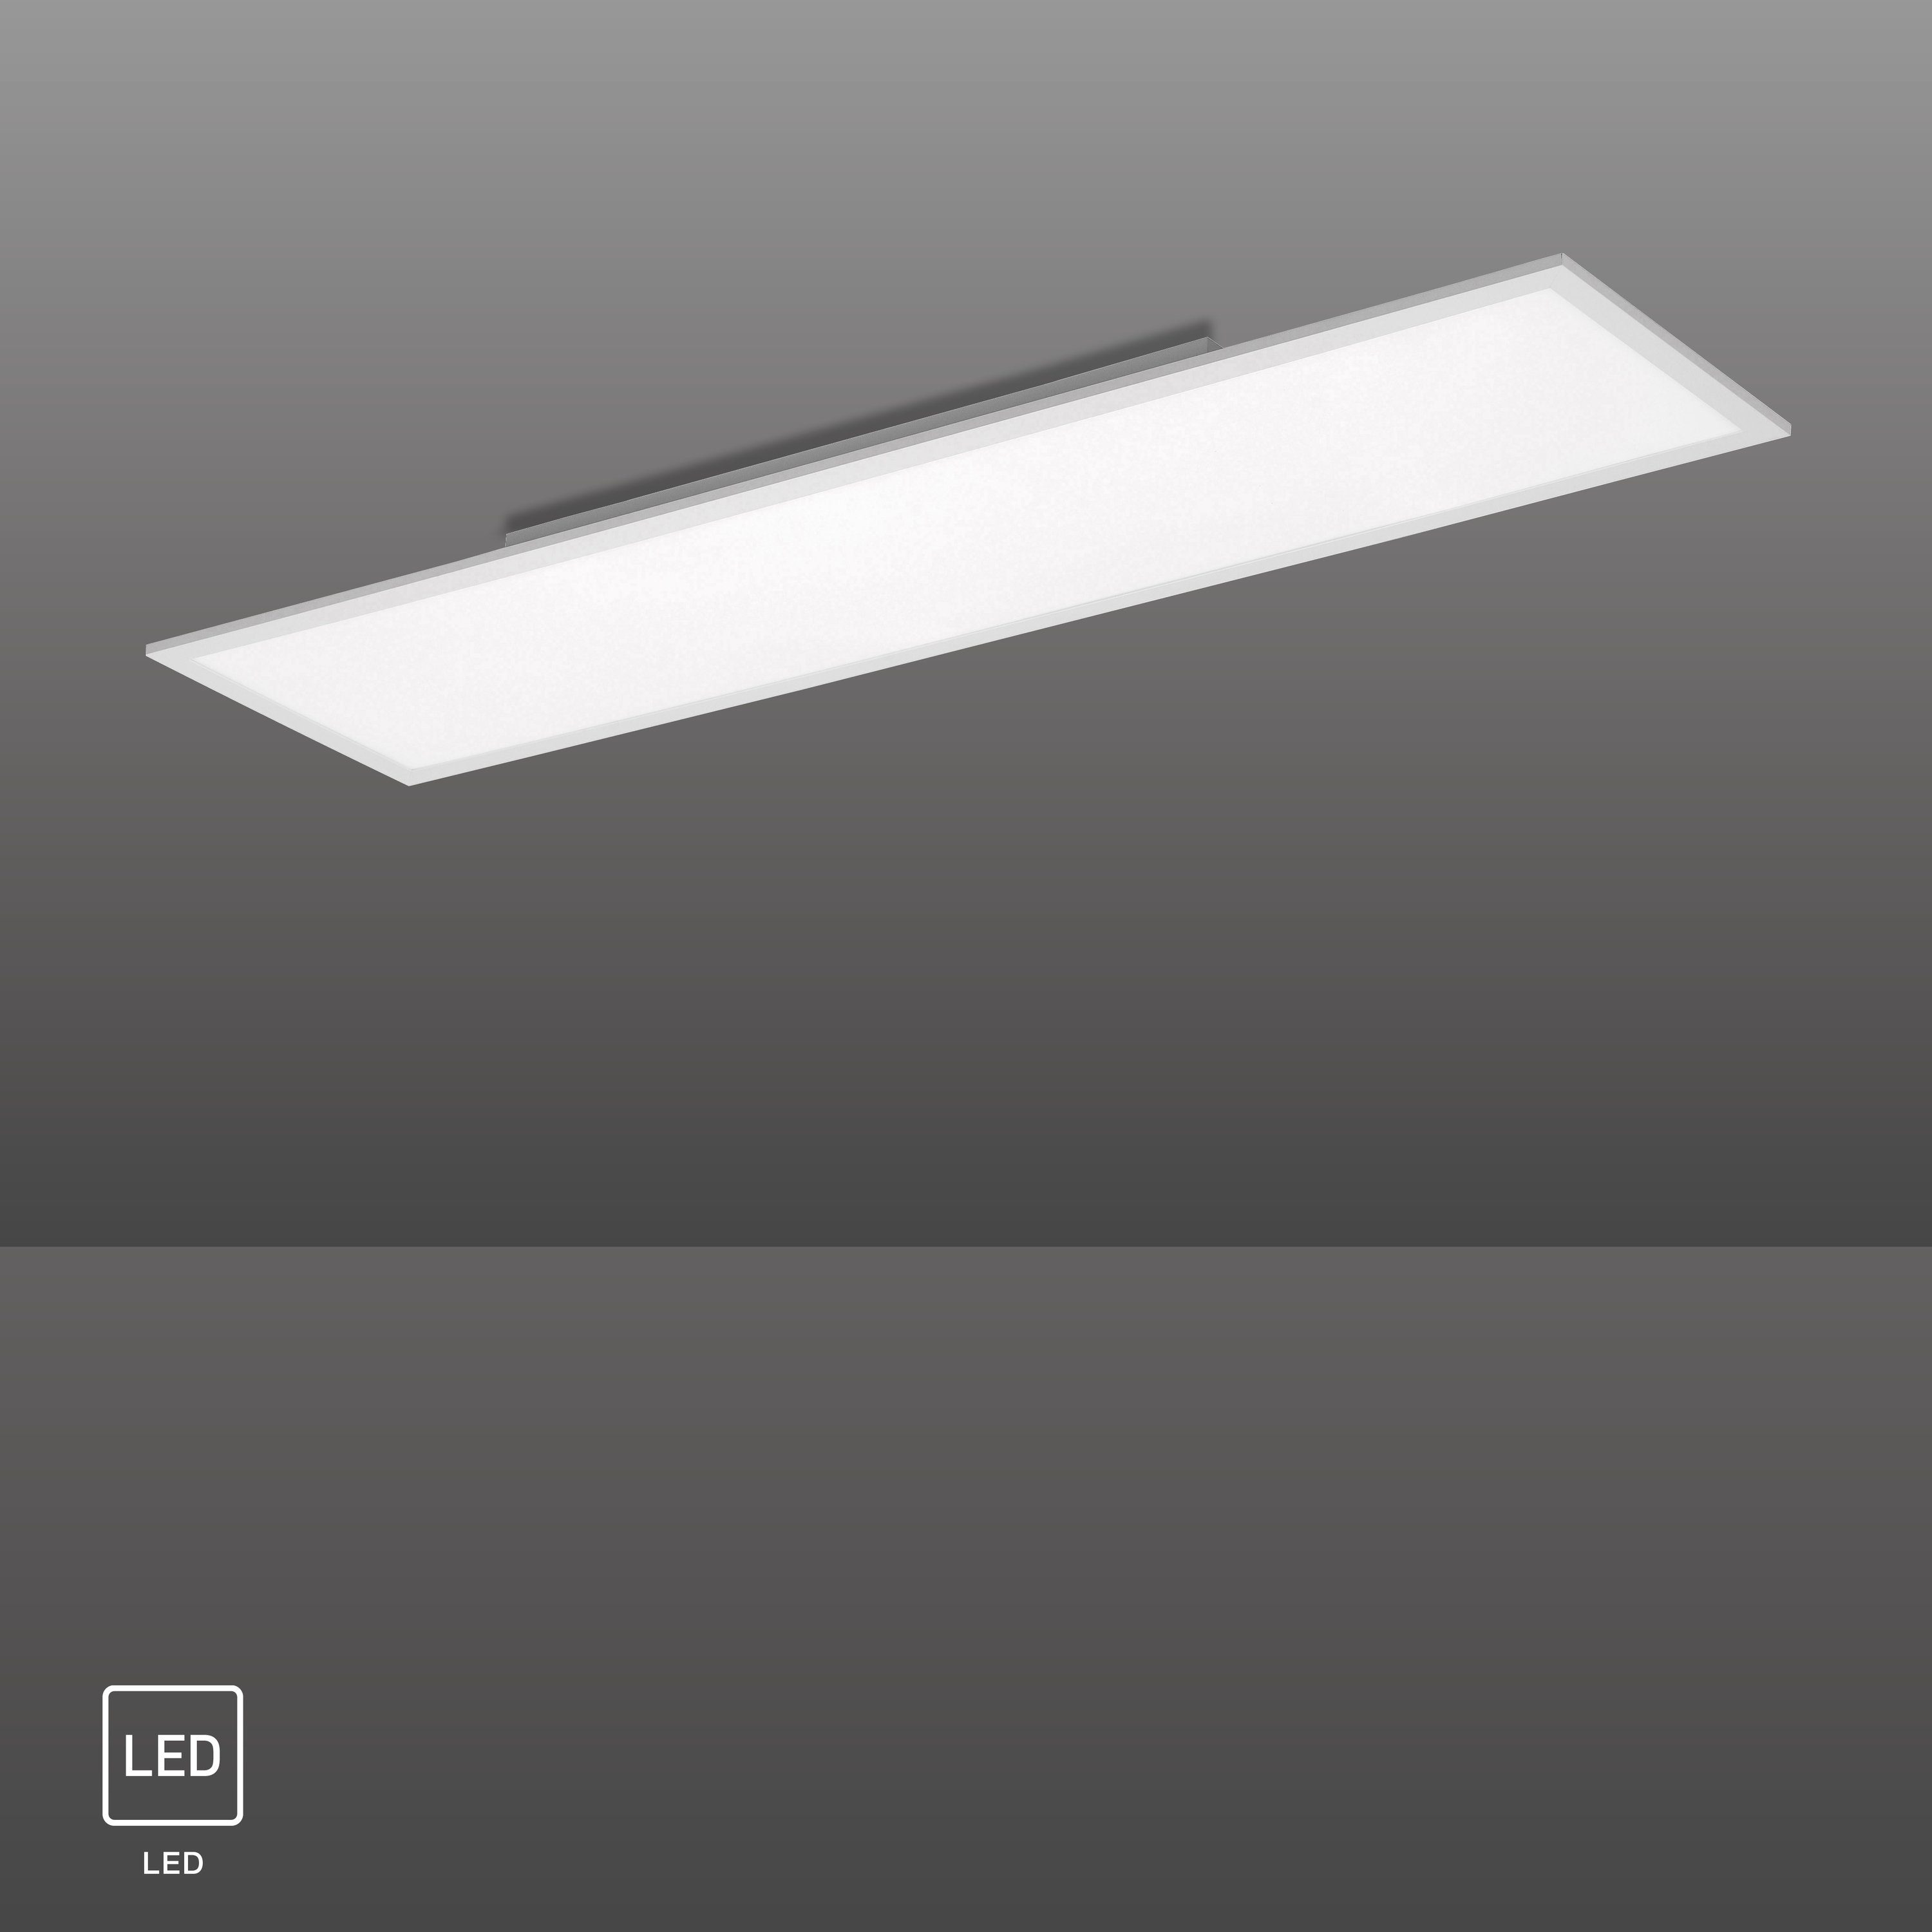 SellTec LED Deckenleuchte LED Panel 40 rechteckig, Kunststoffabeckung, FLAT durch Watt, weiße Lumen Lichtfarbe 1xLED-Board/ Angenehmes, tageslichtweiß, 120x30cm, neutralweiß, 4000 Licht blendfreies